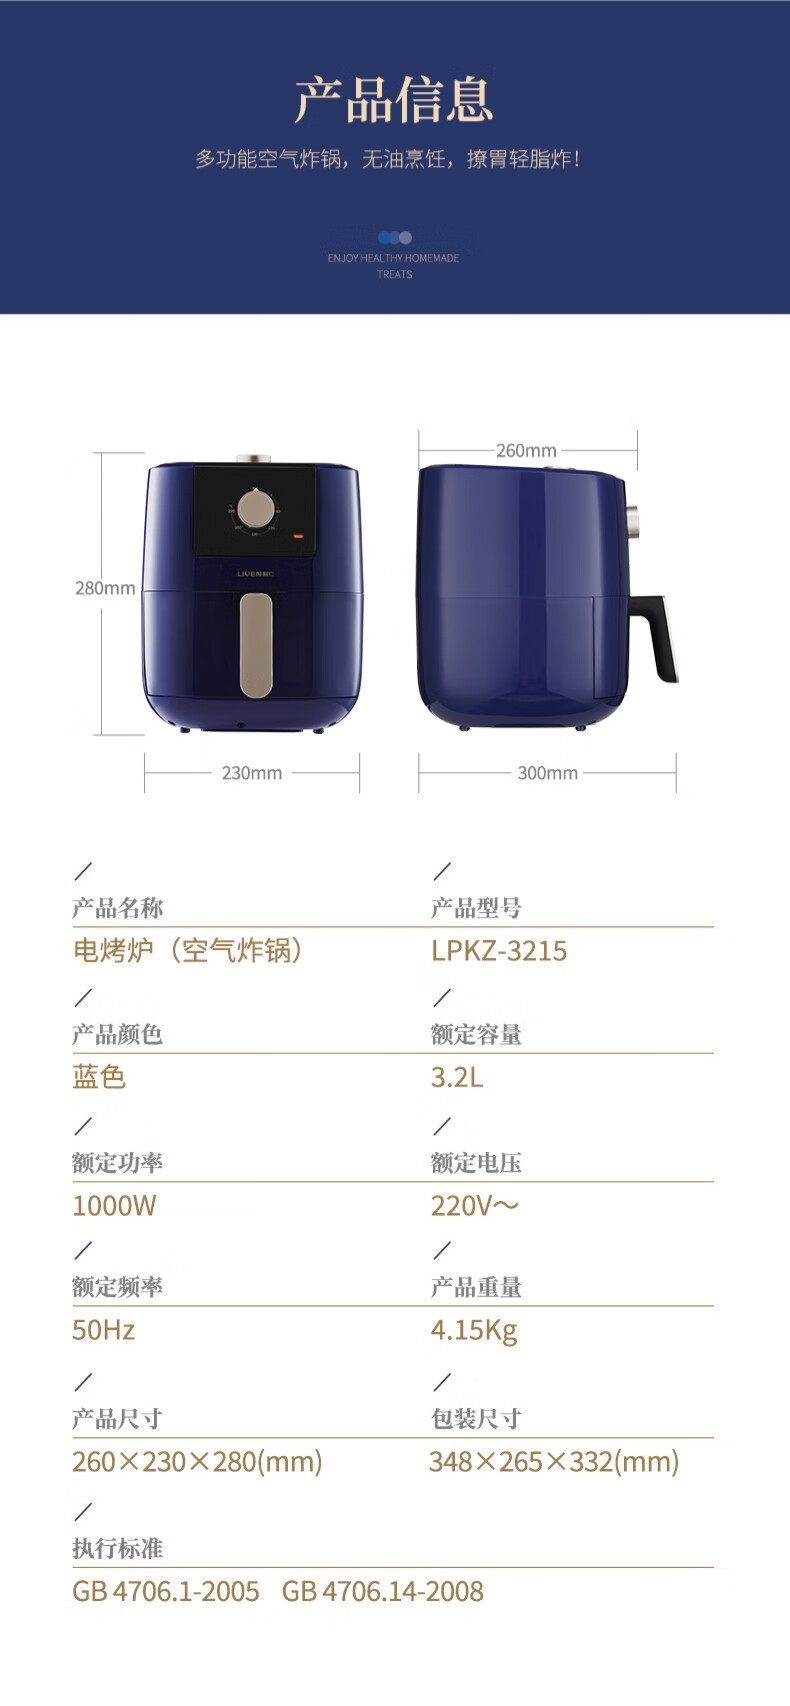 利仁LIVEN 空气炸锅 3.2L电炸锅  淡蓝色 LPKZ-3215 台 LPKZ-3215